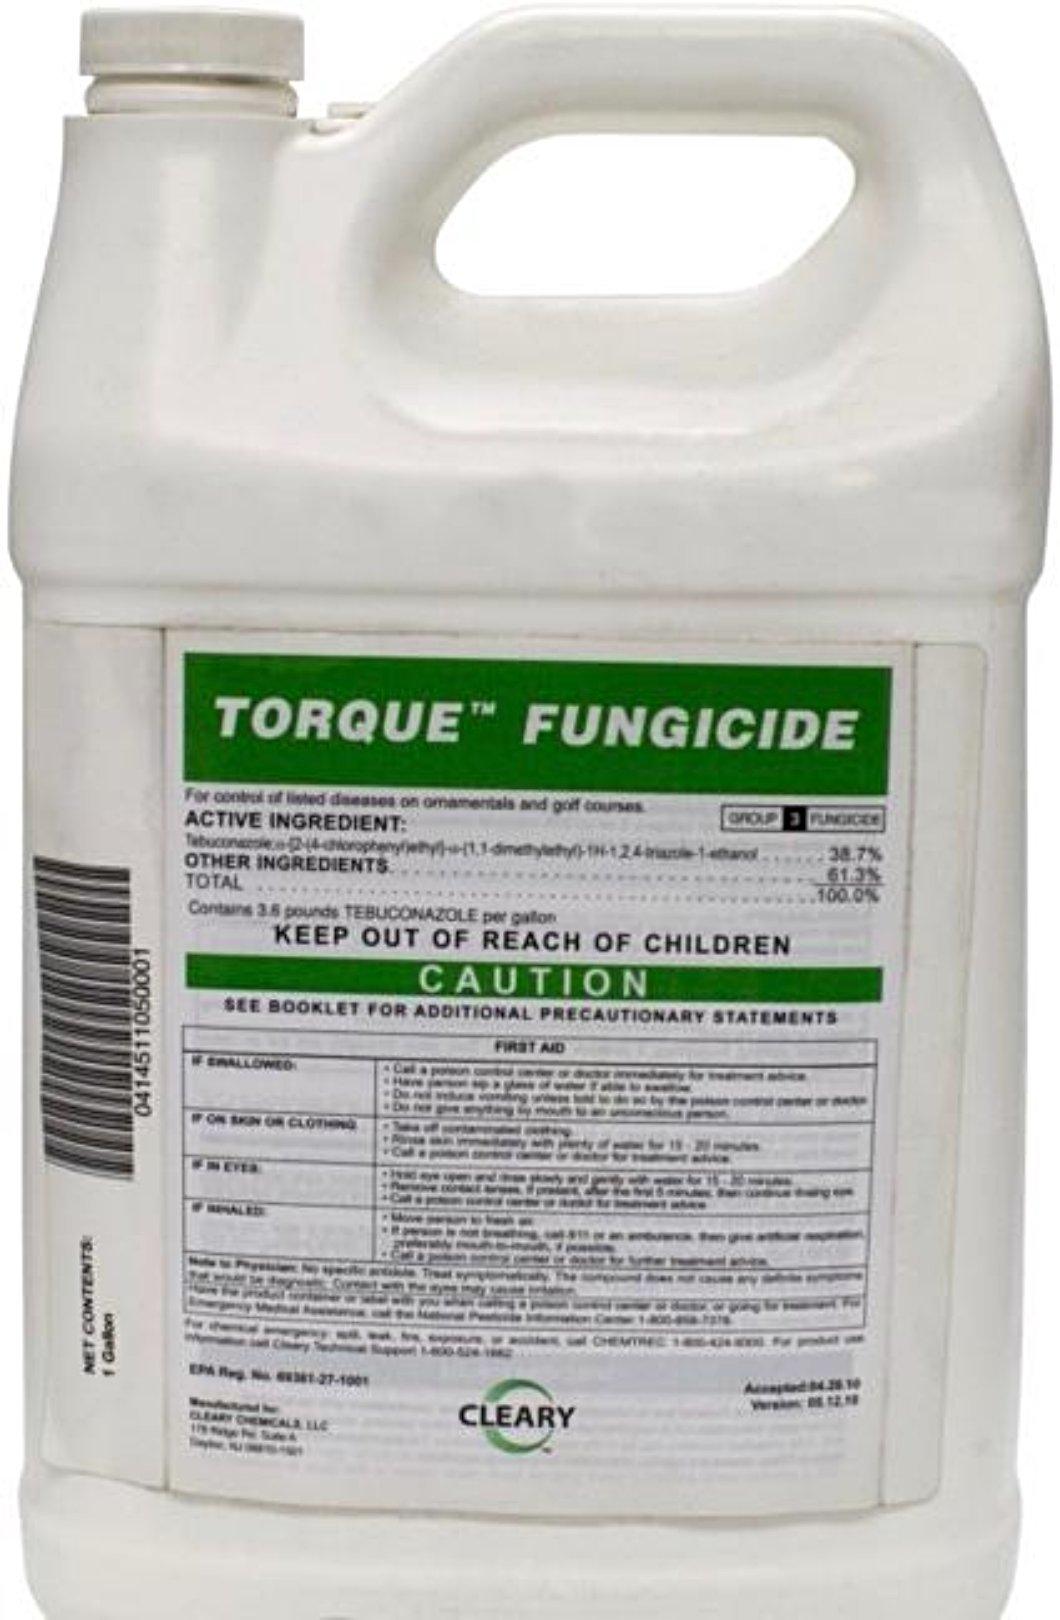 Fungicide - Torque Fungicide